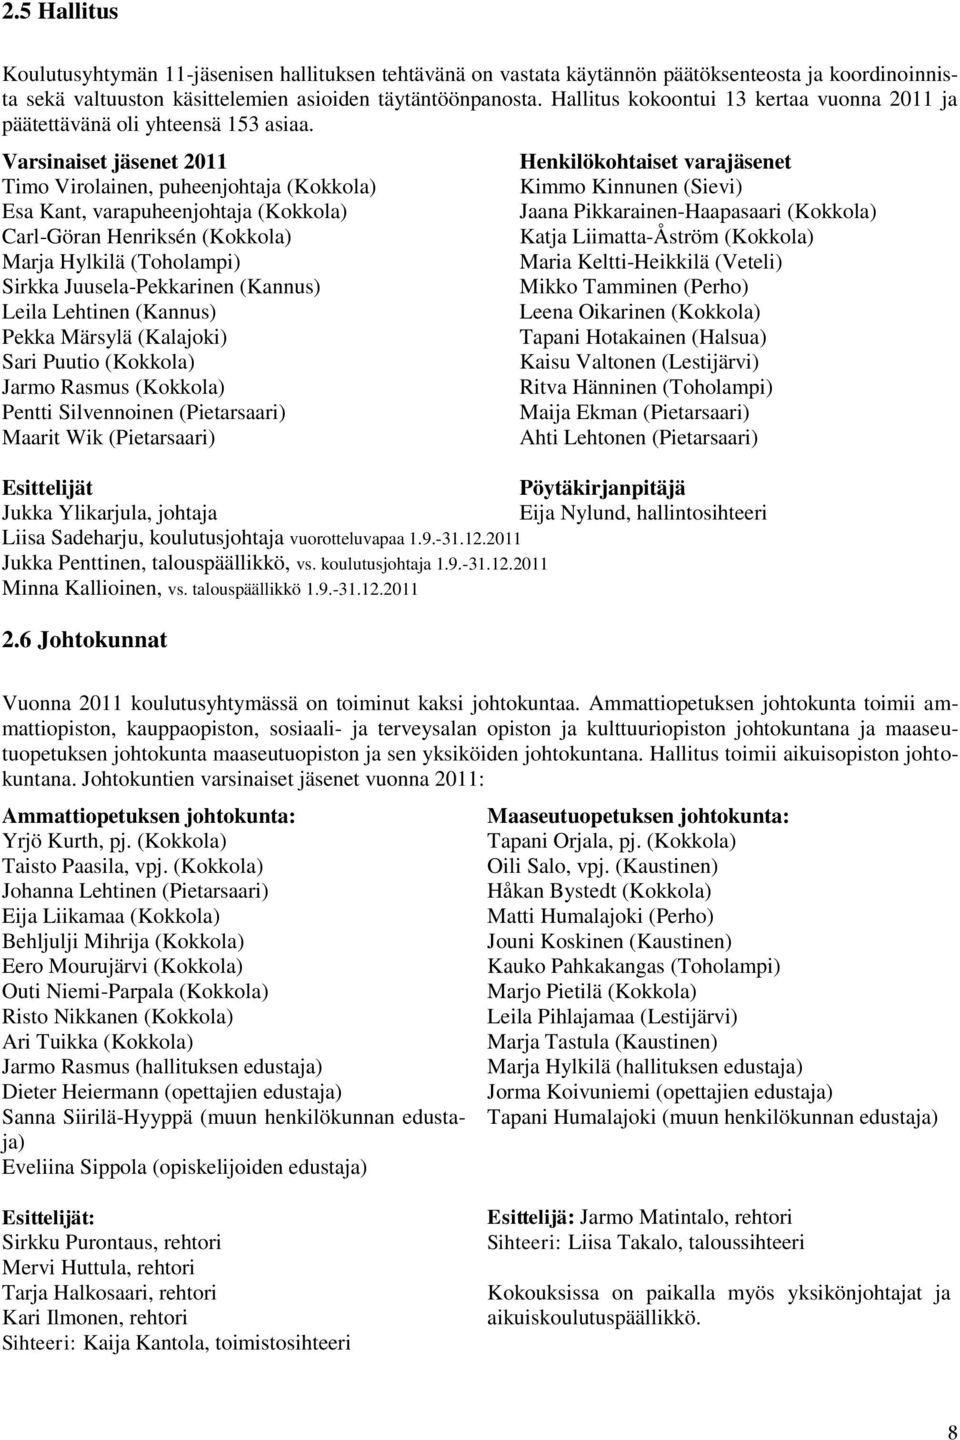 Varsinaiset jäsenet 2011 Timo Virolainen, puheenjohtaja (Kokkola) Esa Kant, varapuheenjohtaja (Kokkola) Carl-Göran Henriksén (Kokkola) Marja Hylkilä (Toholampi) Sirkka Juusela-Pekkarinen (Kannus)